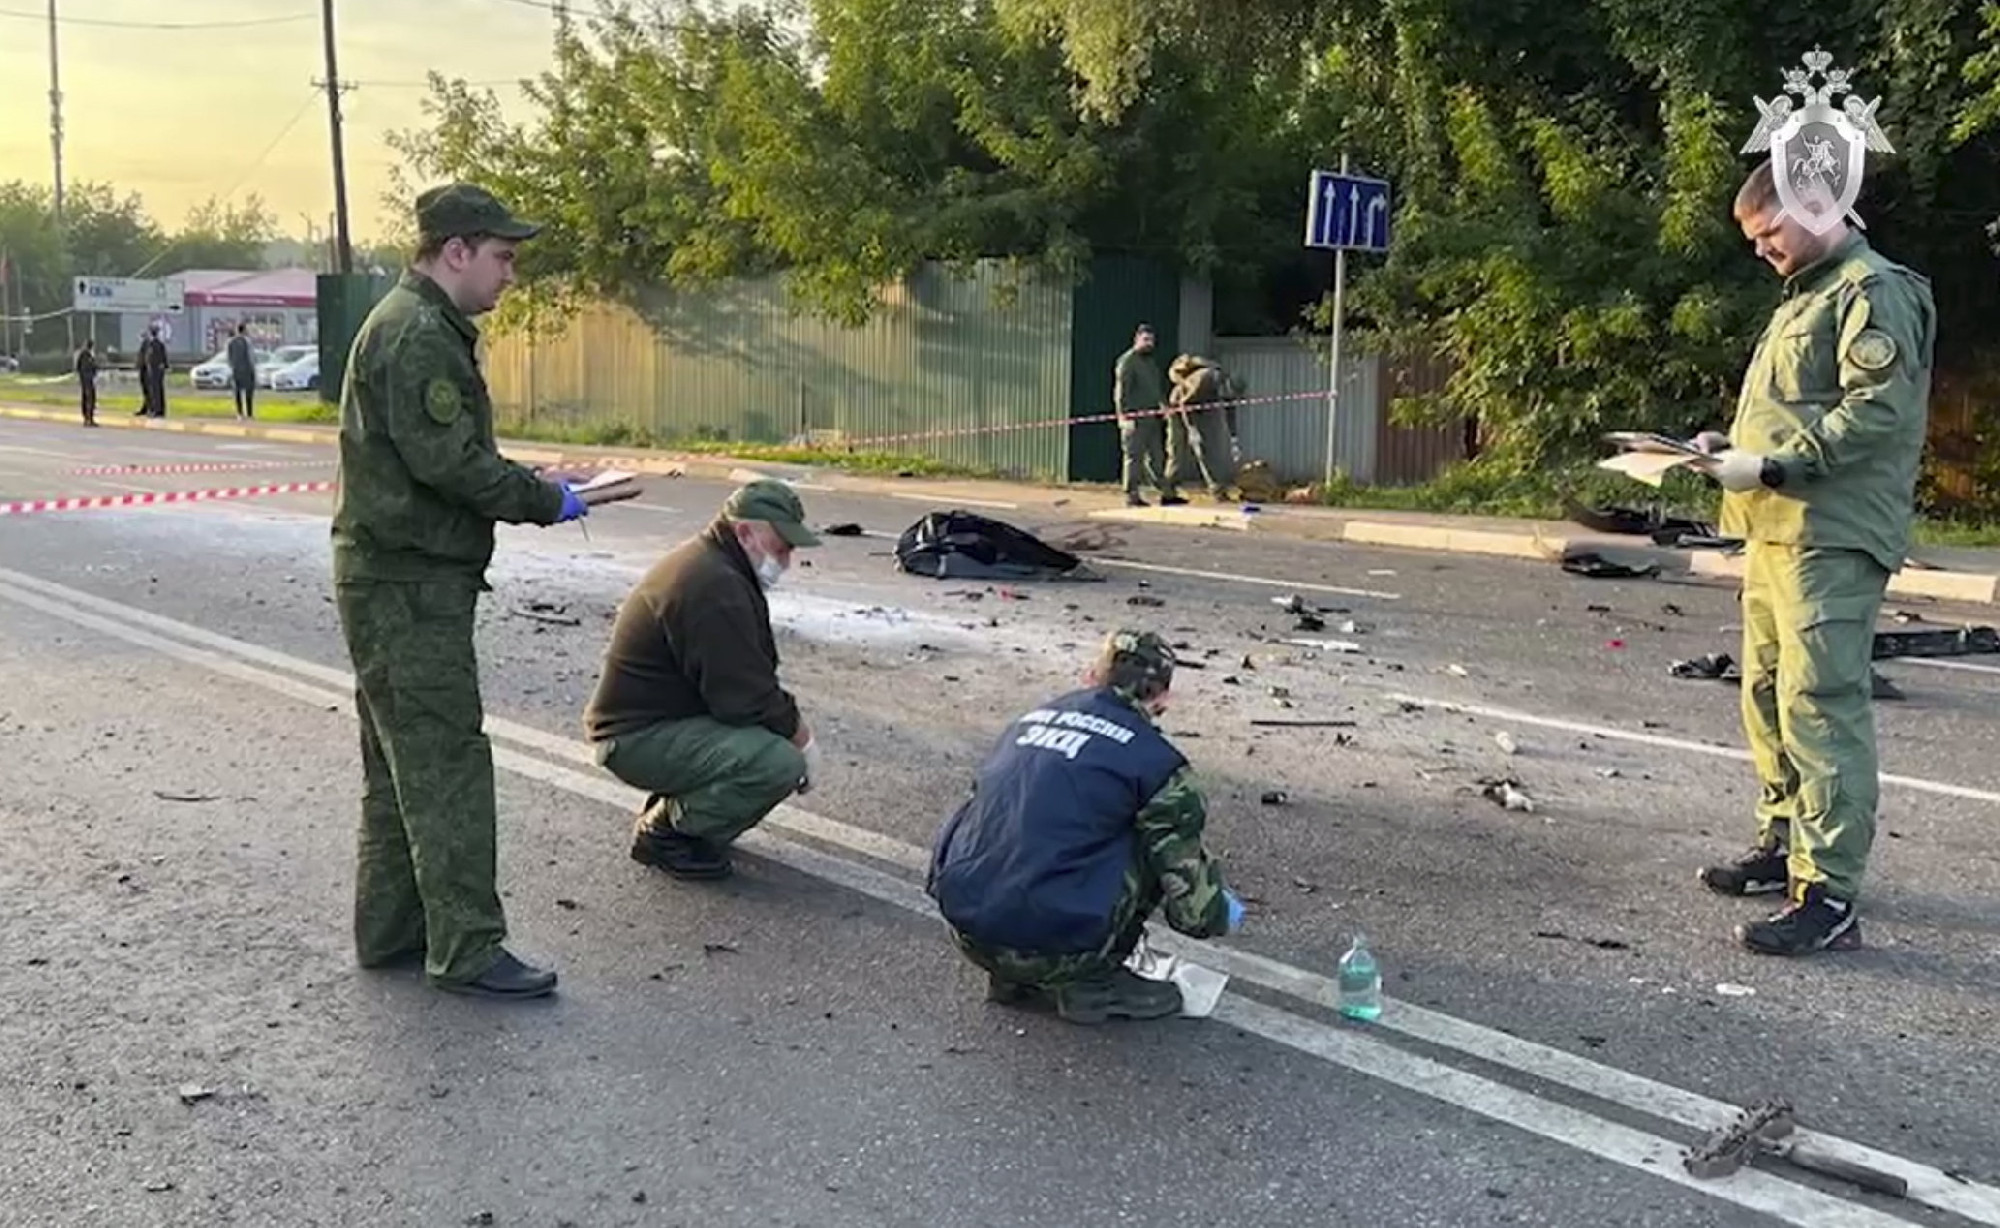 Az orosz nyomozók arra gyanakszanak, hogy az ukránok robbantották fel Darja Duginát